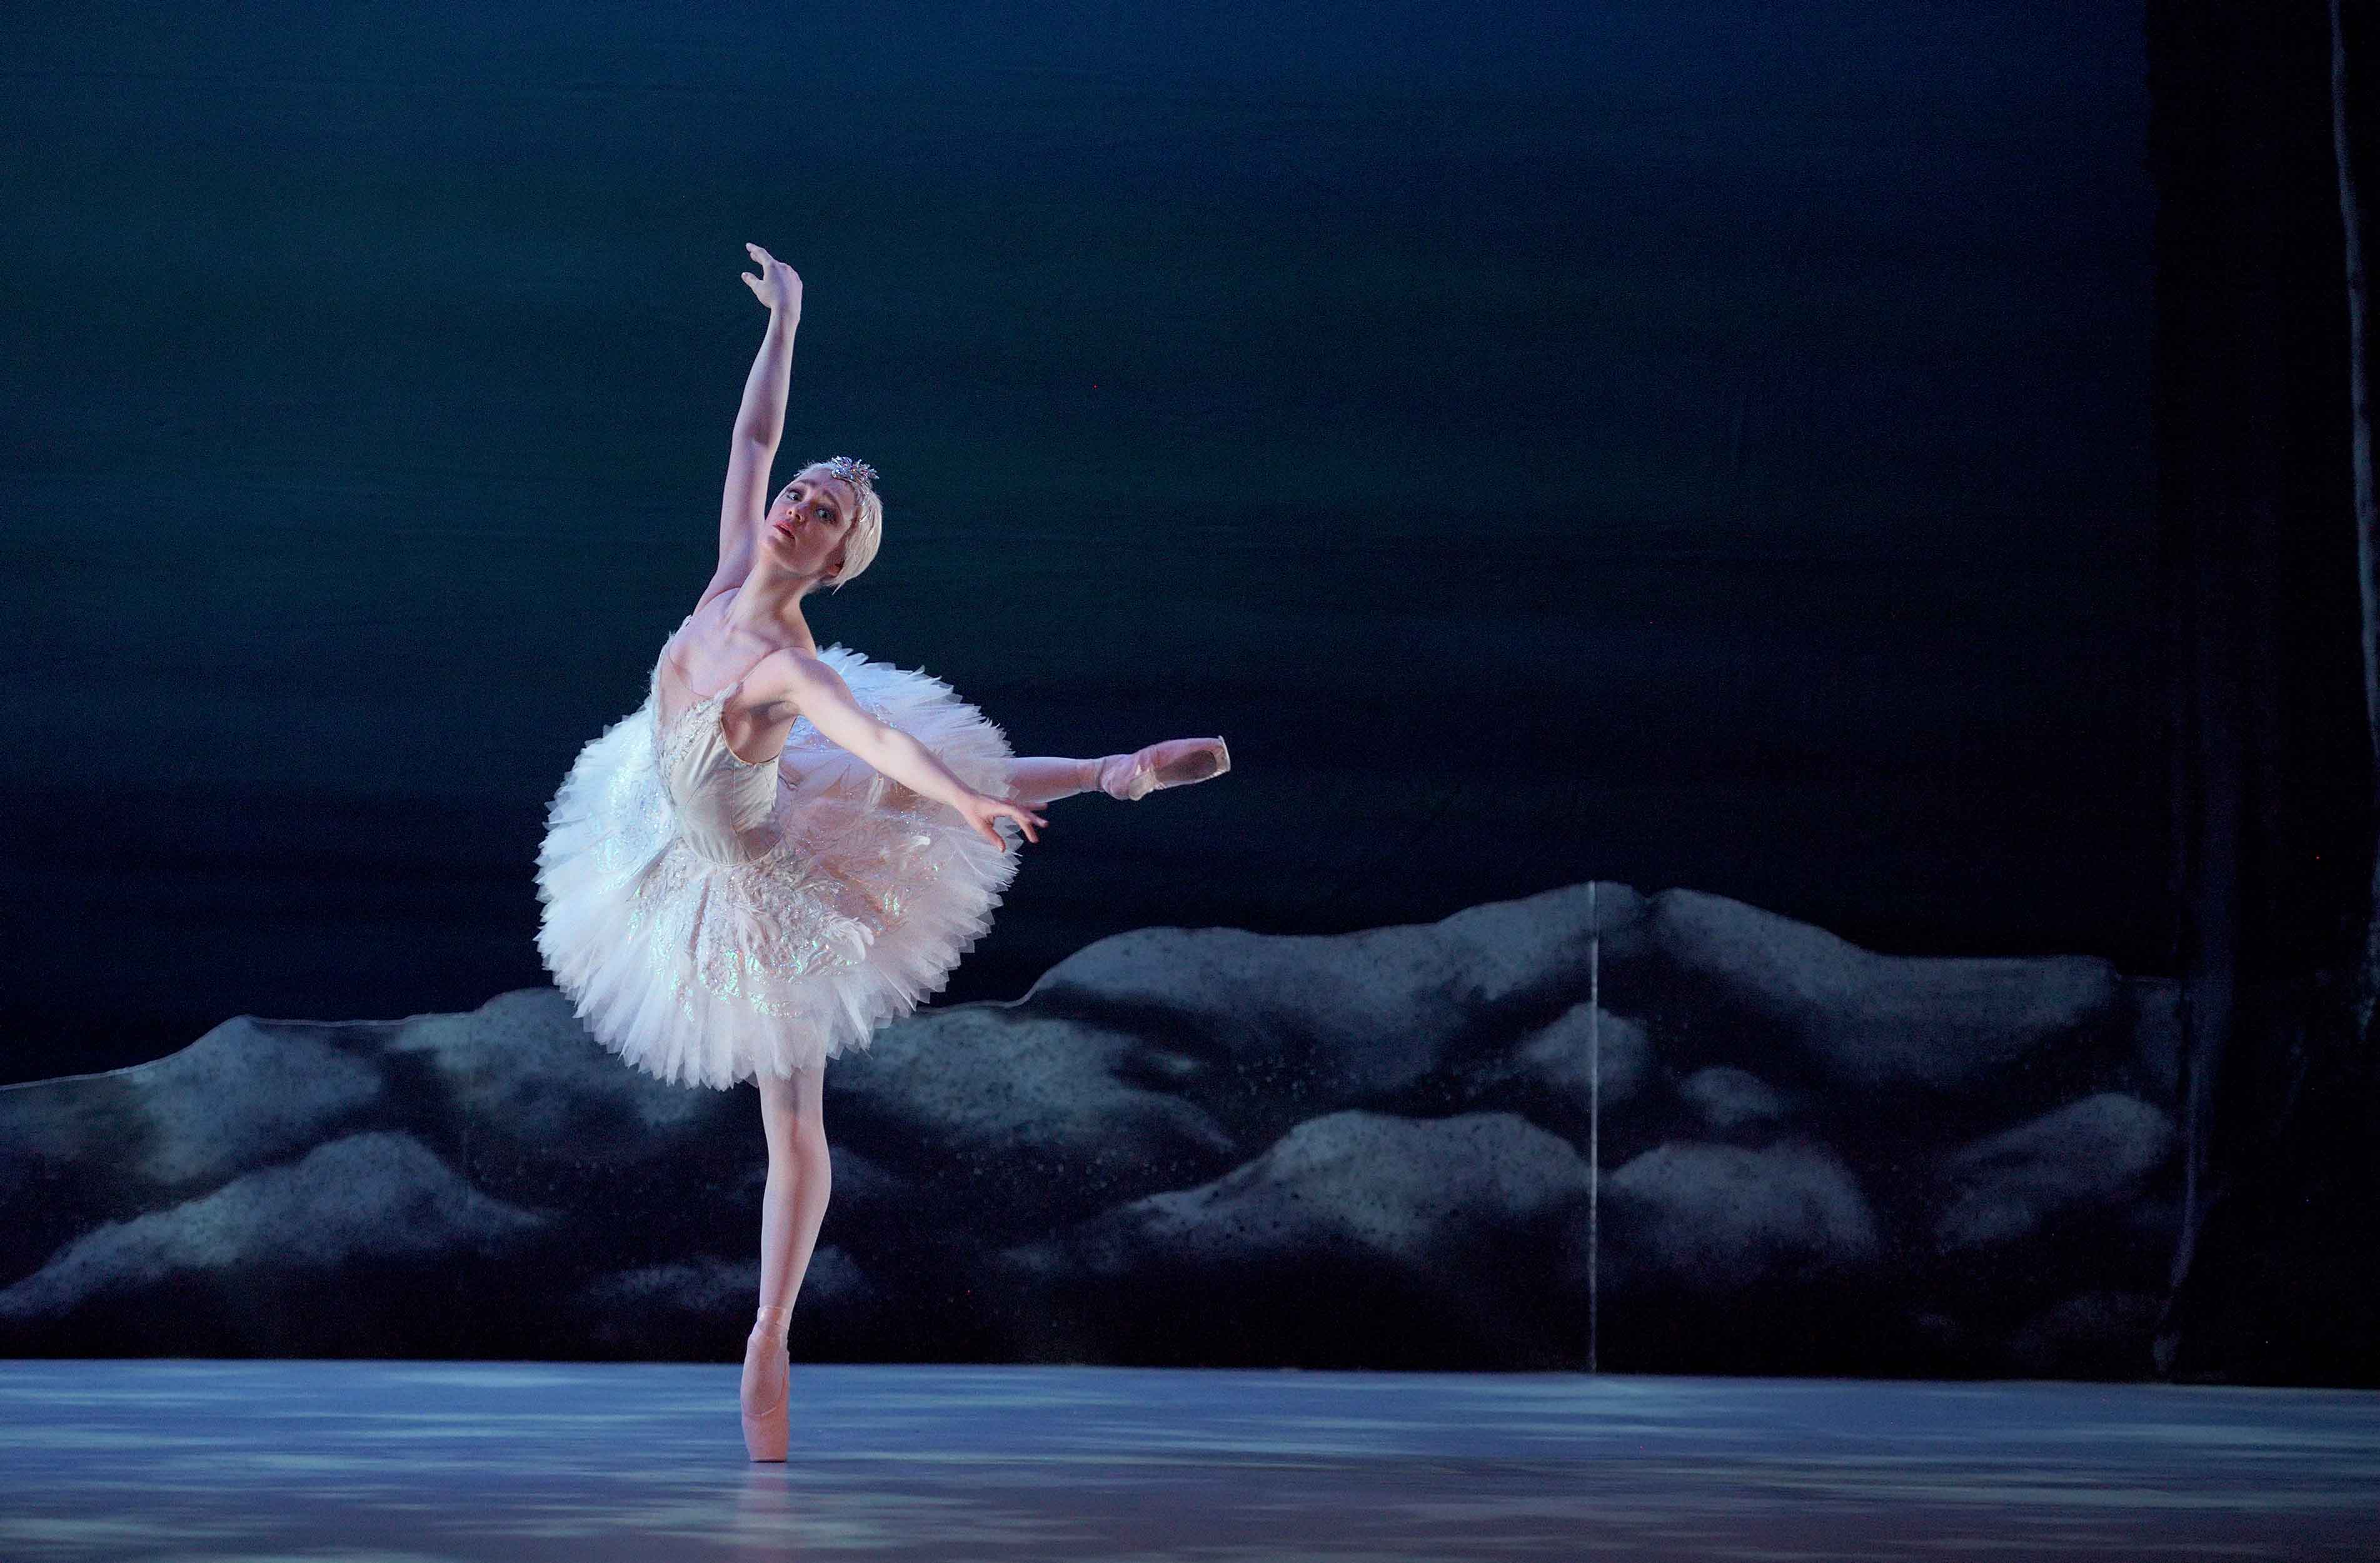 Chloe-Keneally-as-Odette-in-My-First-Ballet-Swan-Lake-(c)-Laurent-Liotardo